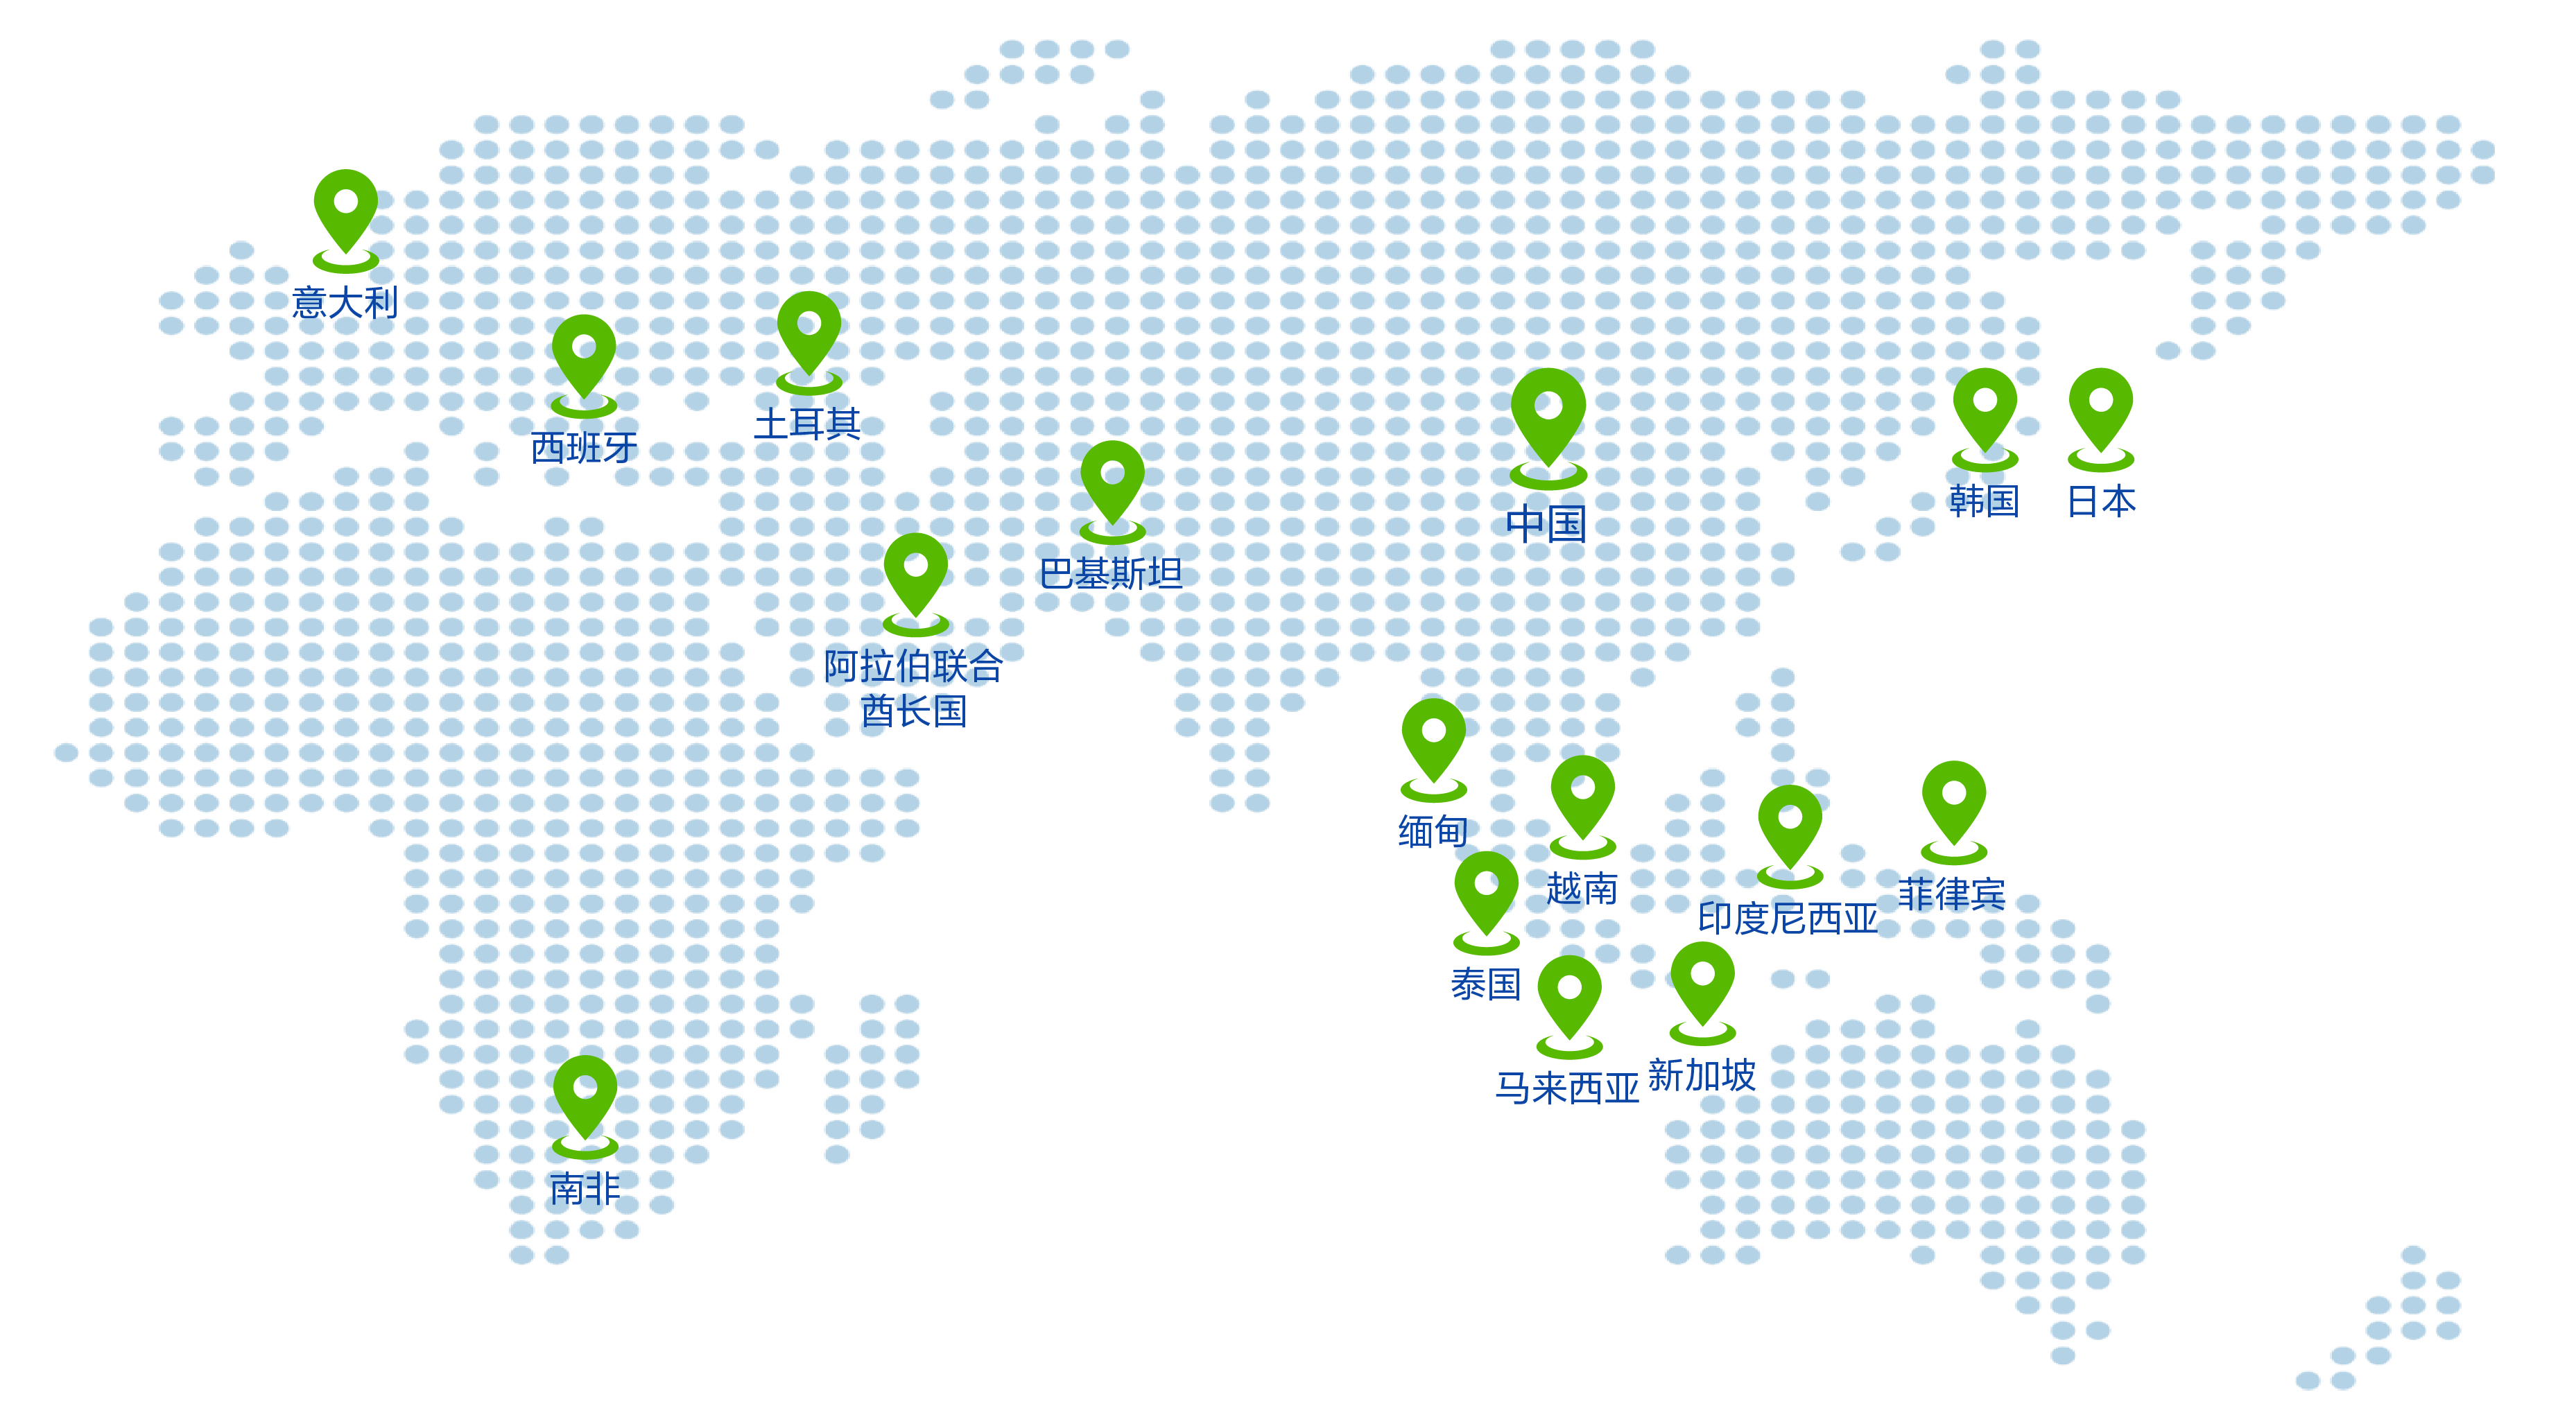  全球机构分布地图剪裁